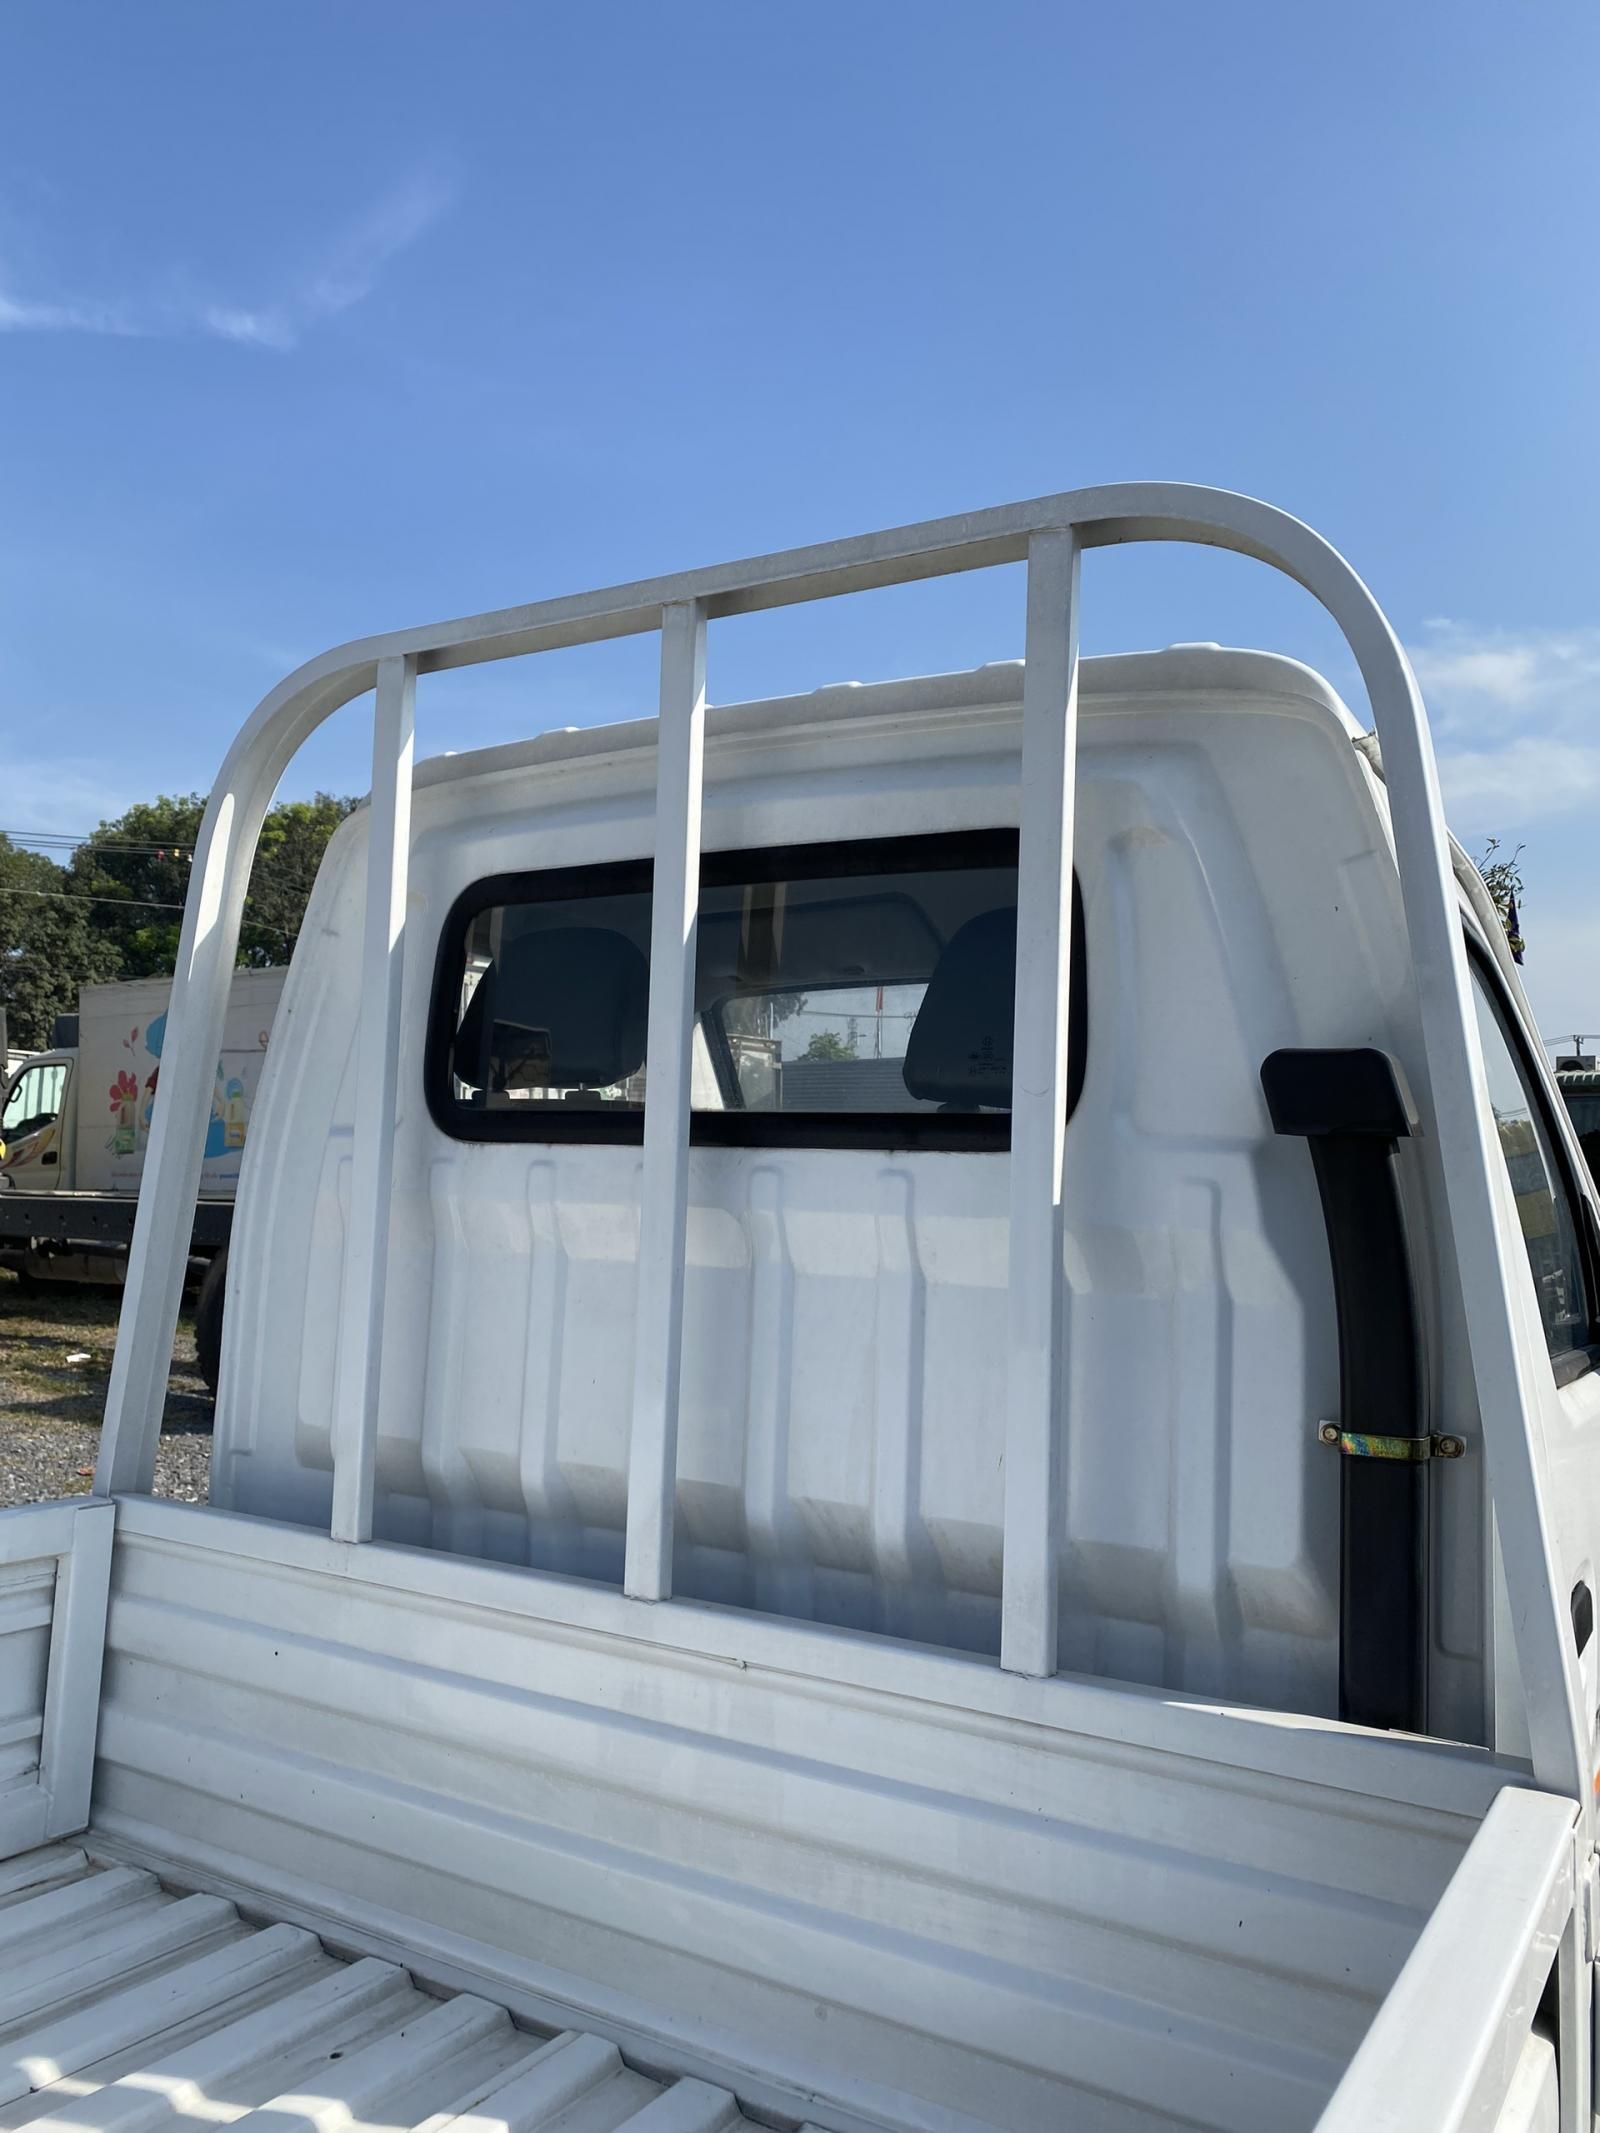 Xe tải 500kg - dưới 1 tấn 2018 - Thanh lý xe Trường Giang KY5 thùng lửng - bạt đời 2018 công nghệ Nhật